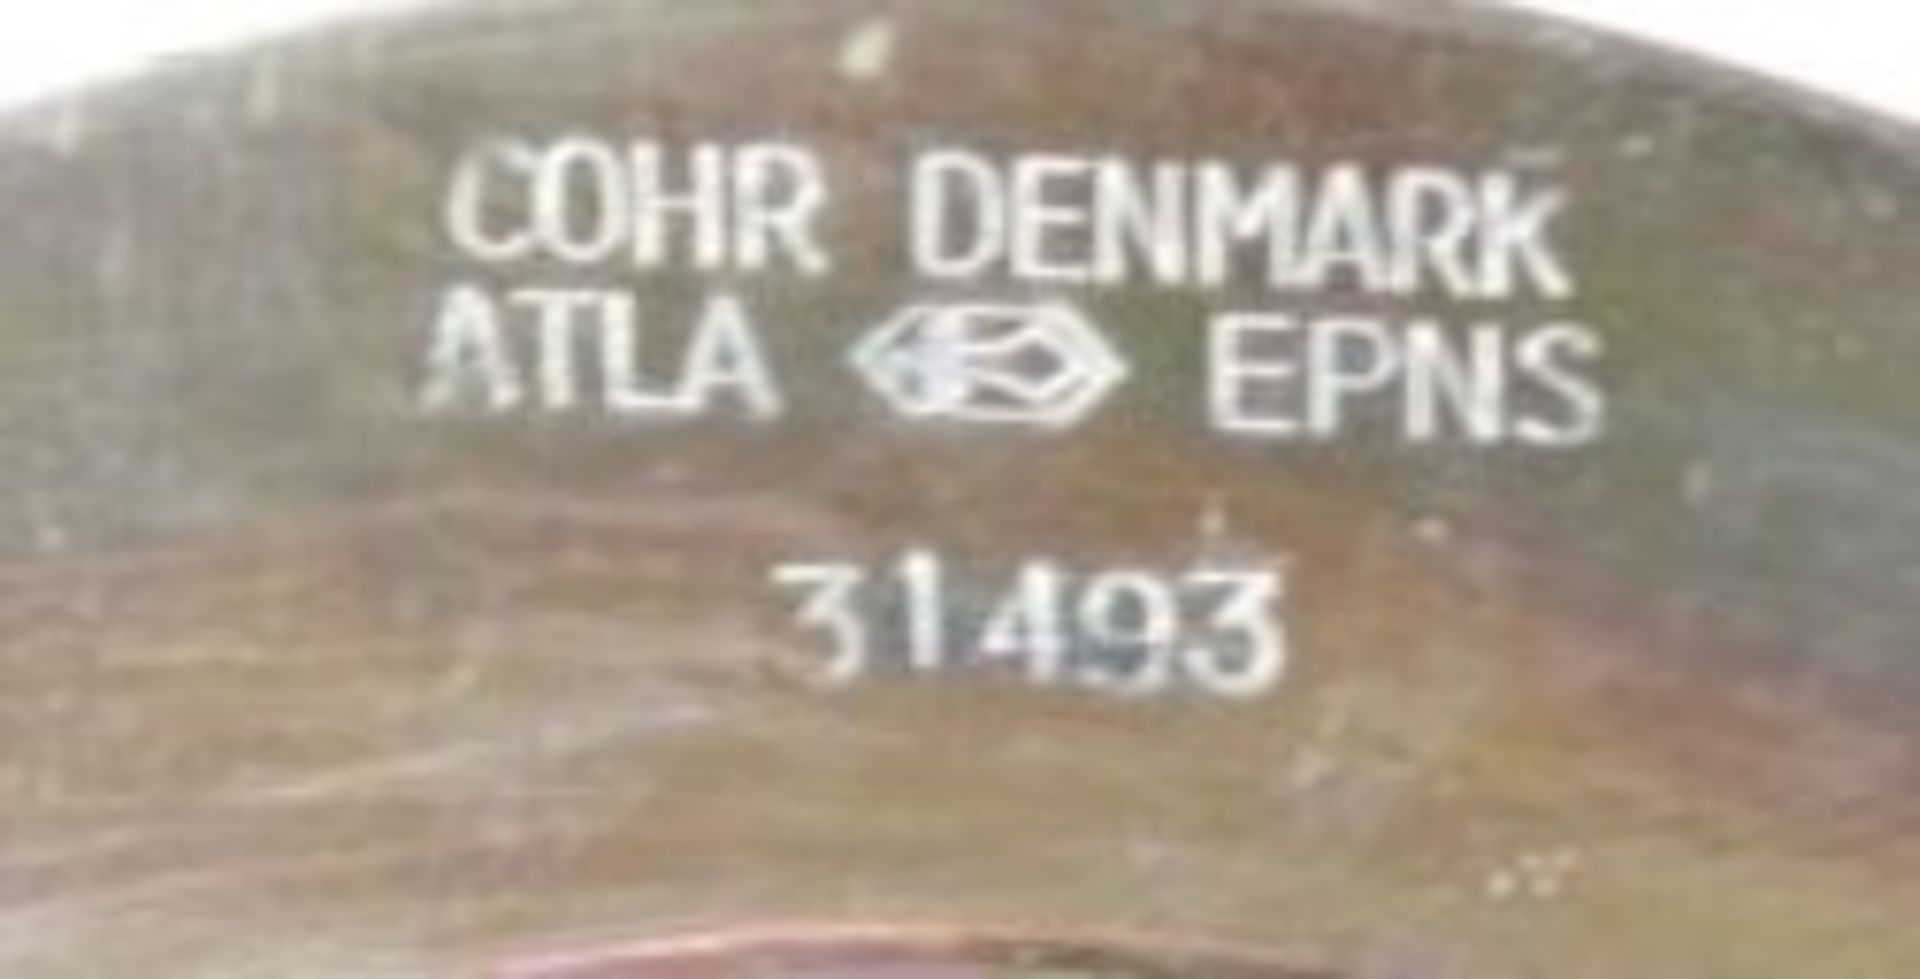 Warmhalteschale, Cohr Danmark, EPNS, H-13cm D-23cm. - Bild 3 aus 3